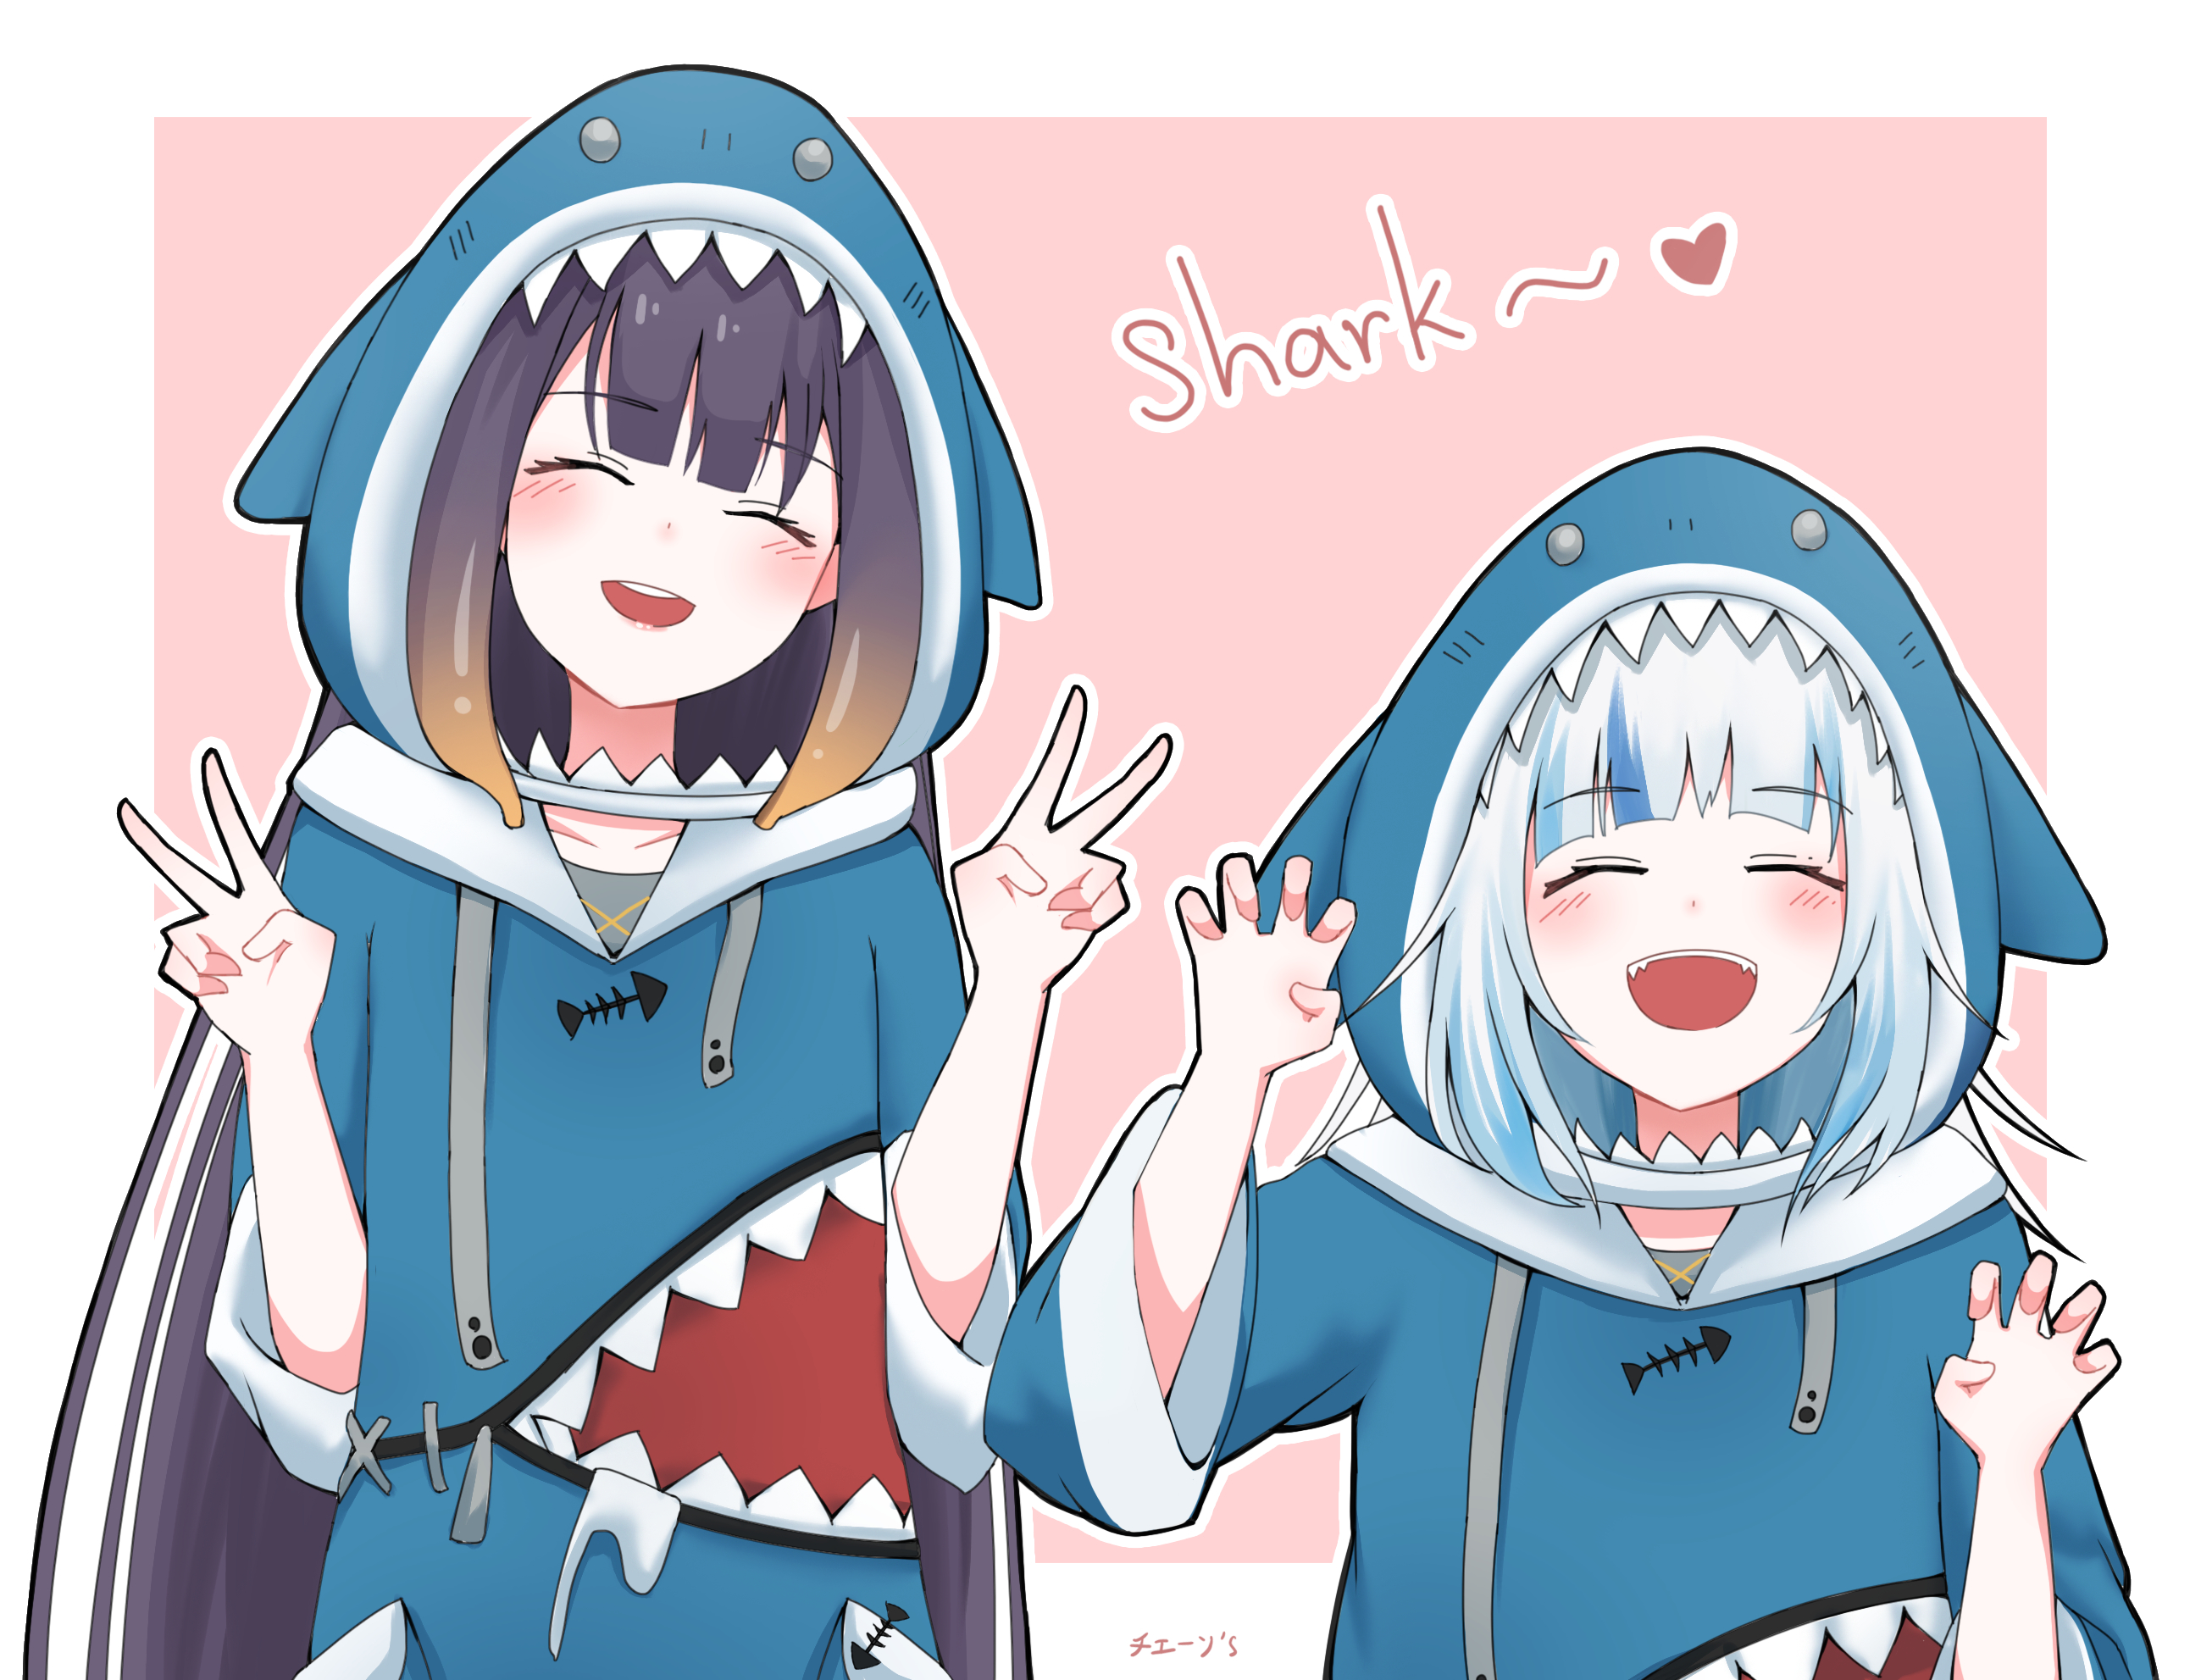 Shark~~